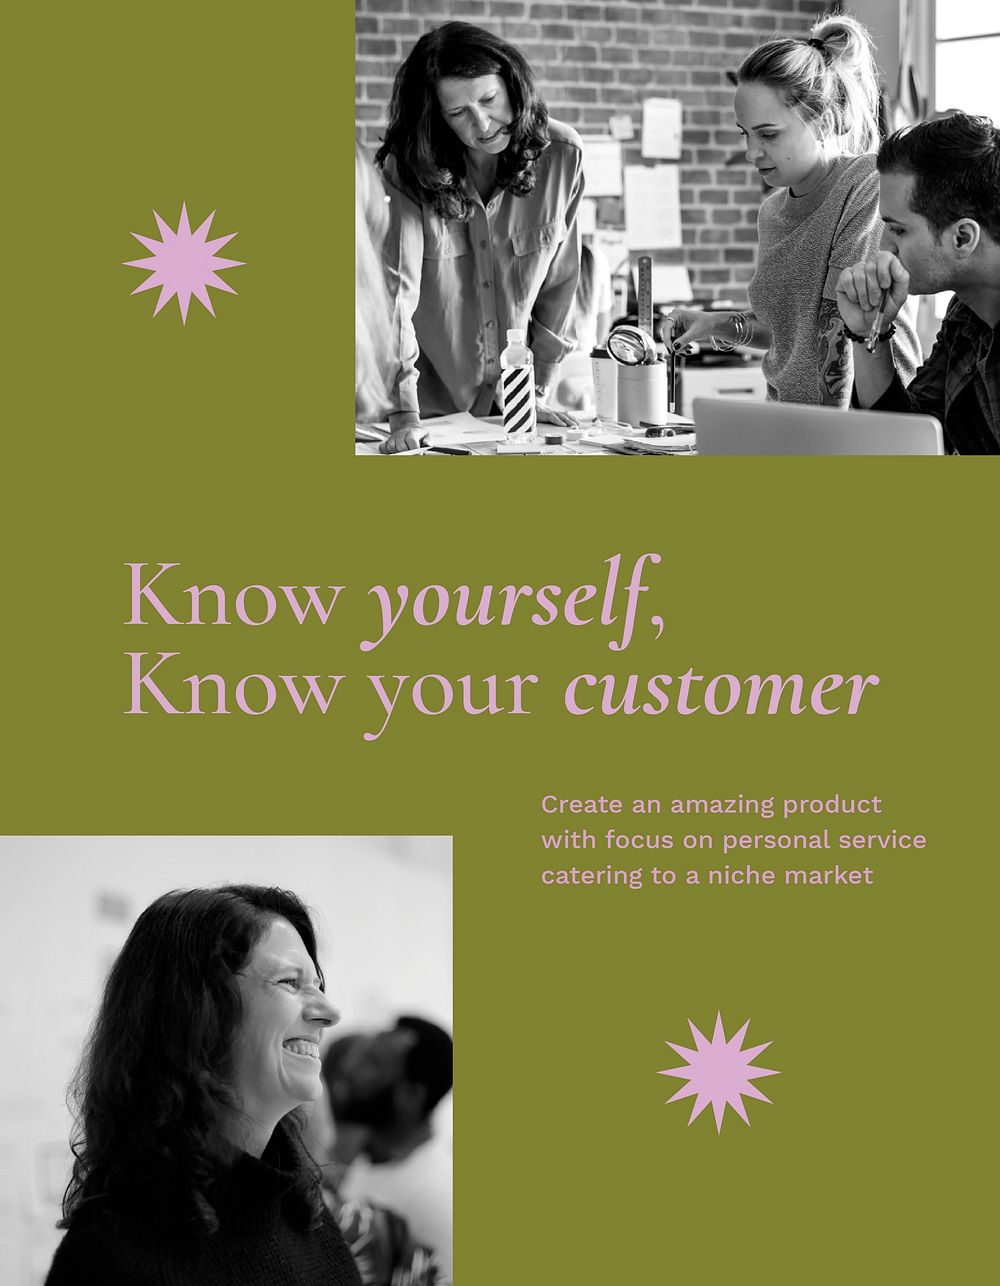 Business marketing flyer template, women photo psd